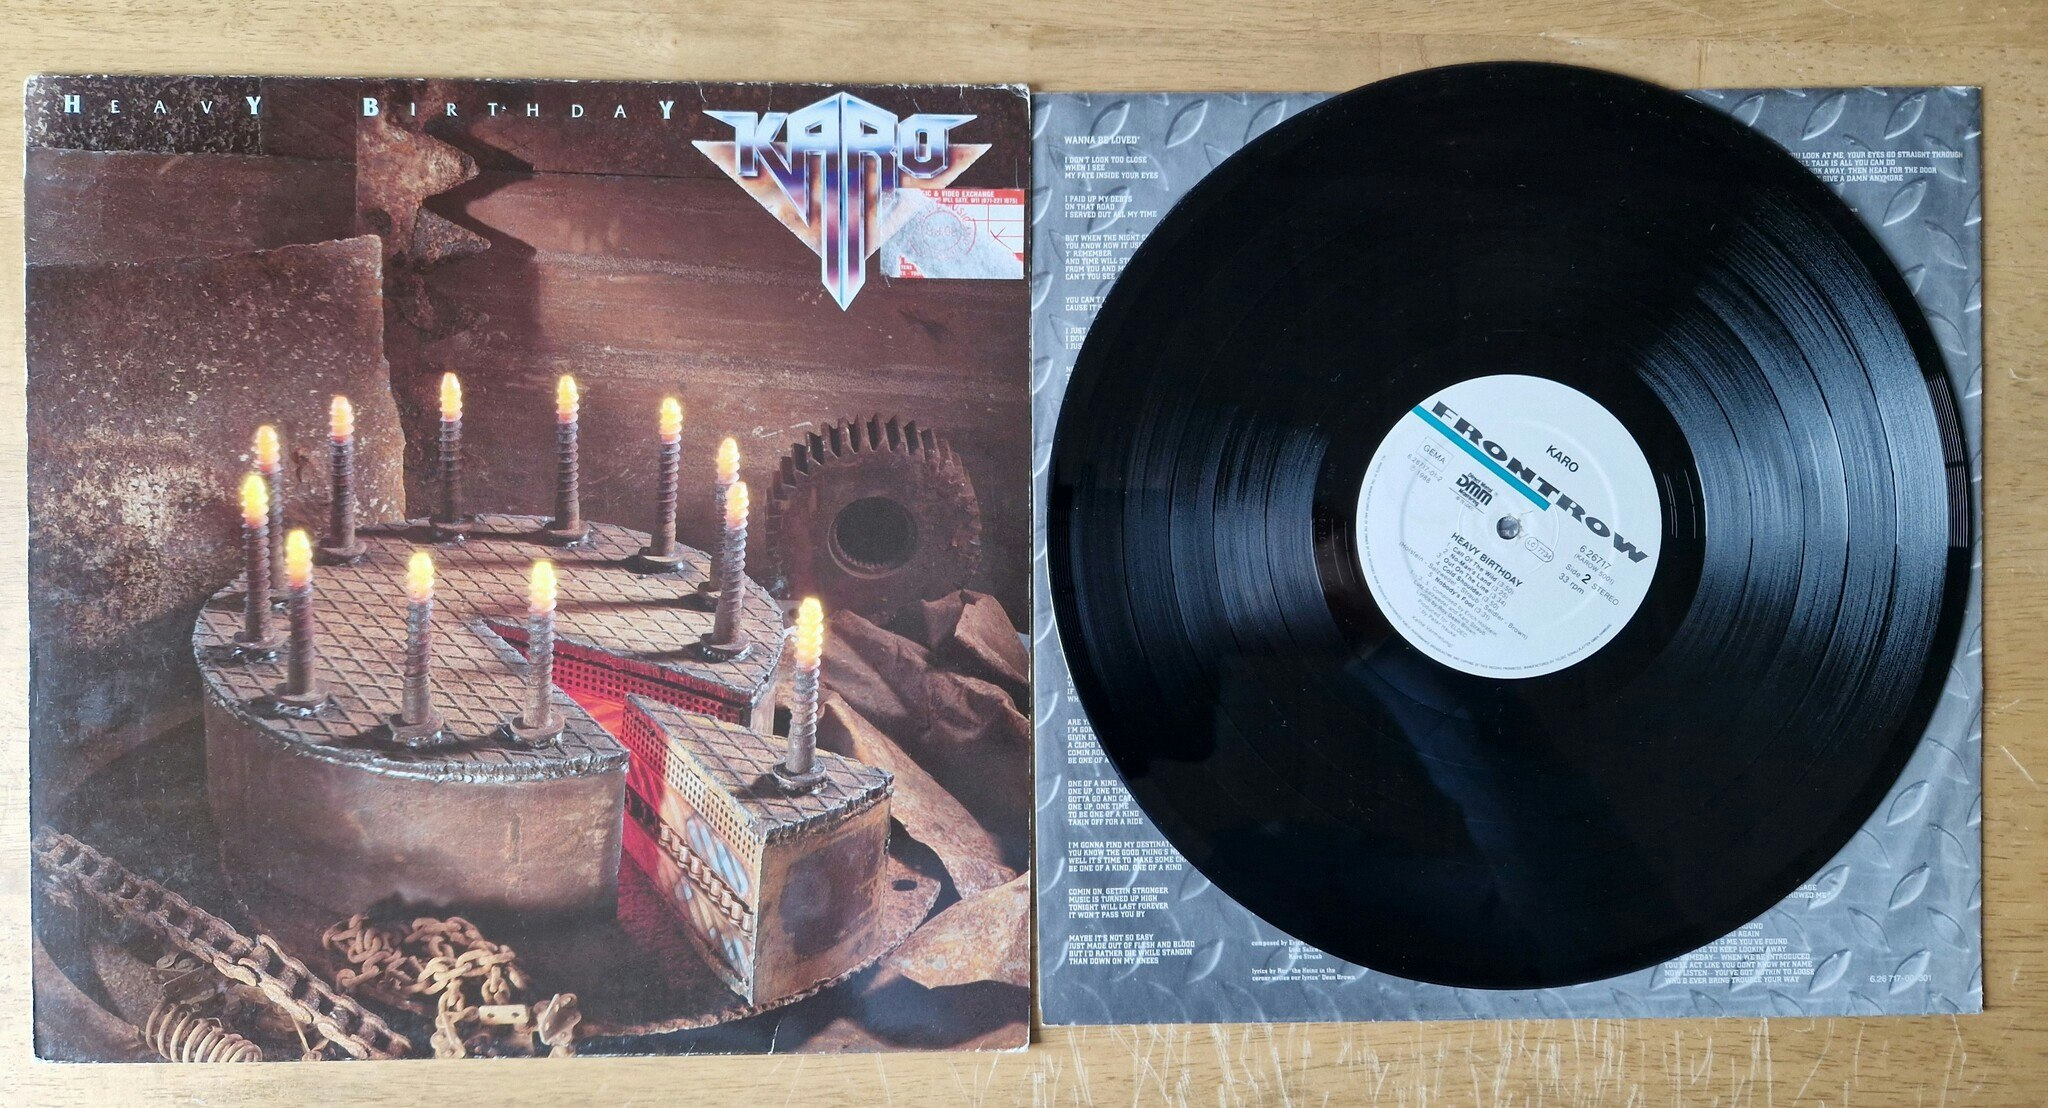 Karo, Heavy birthday. Vinyl LP